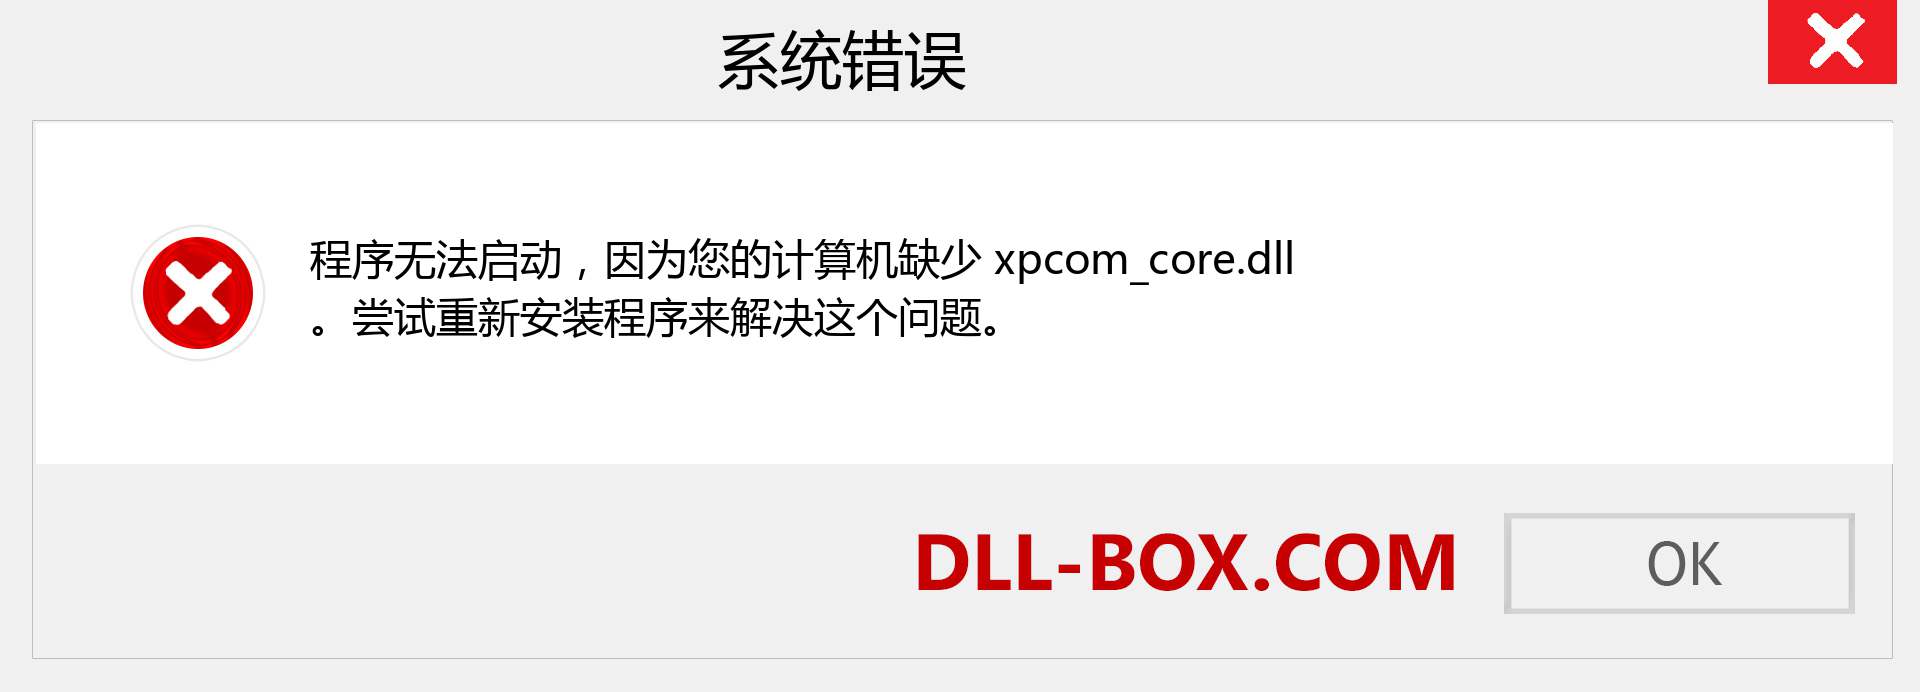 xpcom_core.dll 文件丢失？。 适用于 Windows 7、8、10 的下载 - 修复 Windows、照片、图像上的 xpcom_core dll 丢失错误